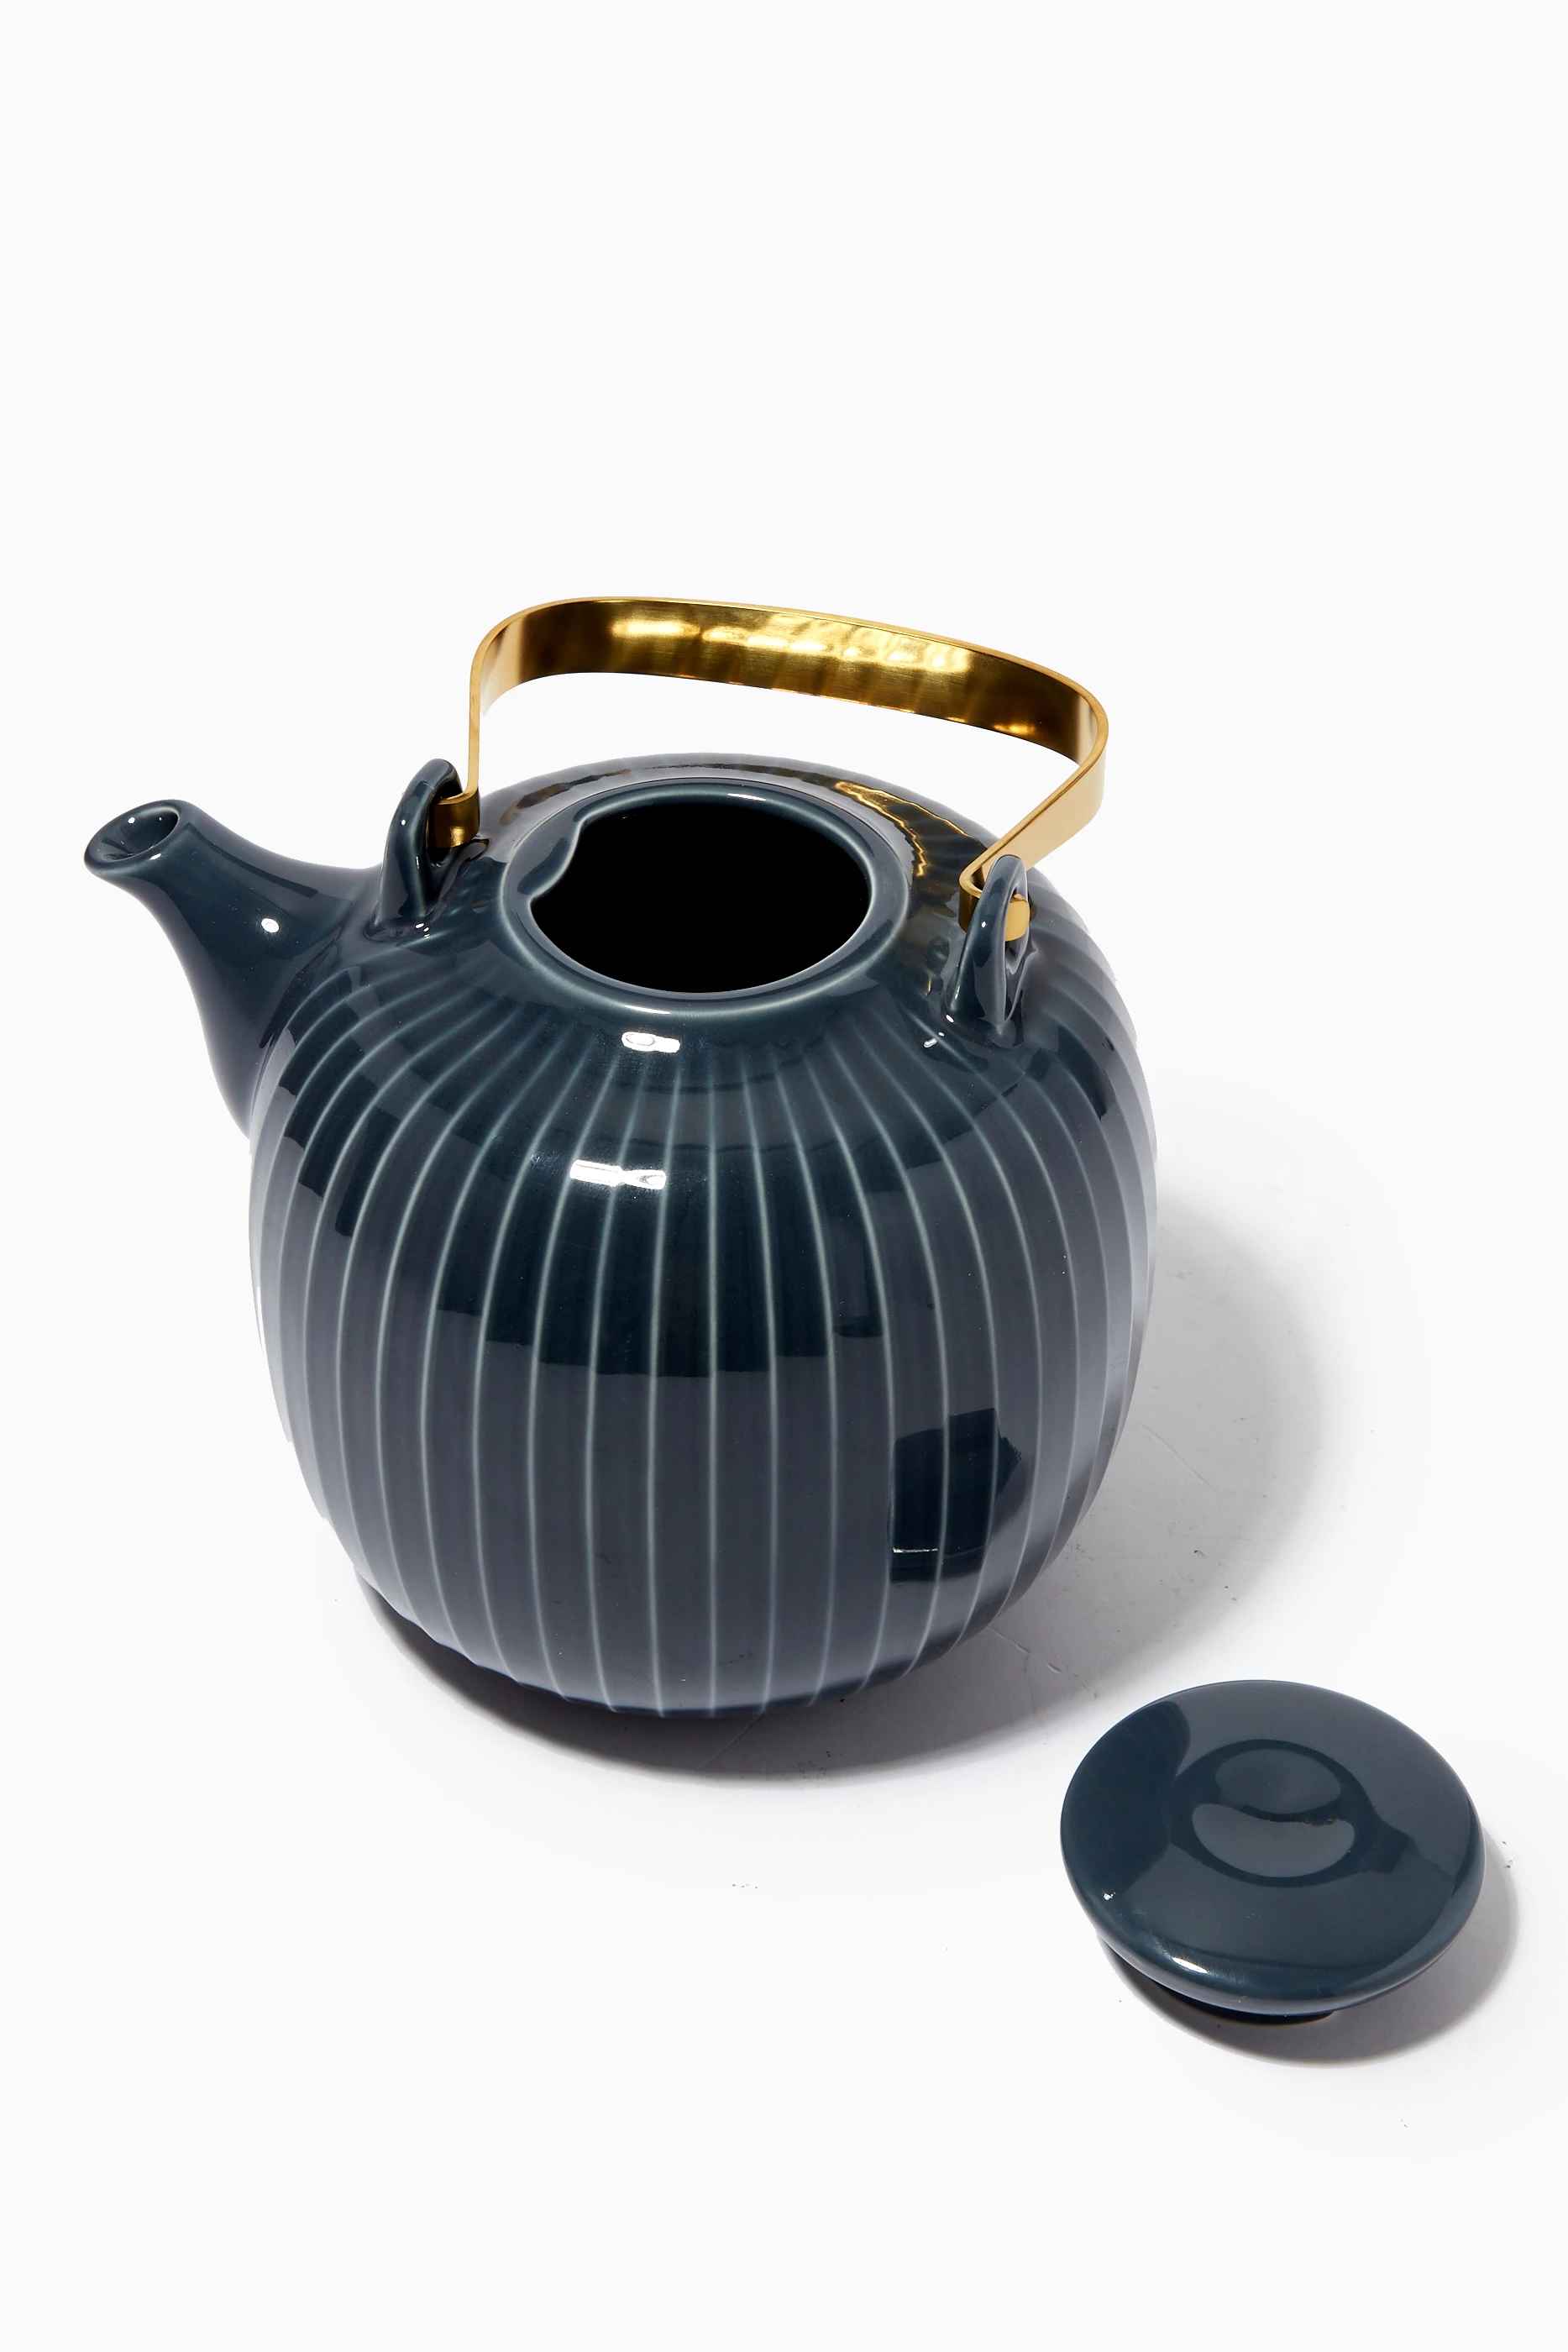 Kahler Hammershøi Teapot 1,2 L Anthracite Grey (17008)